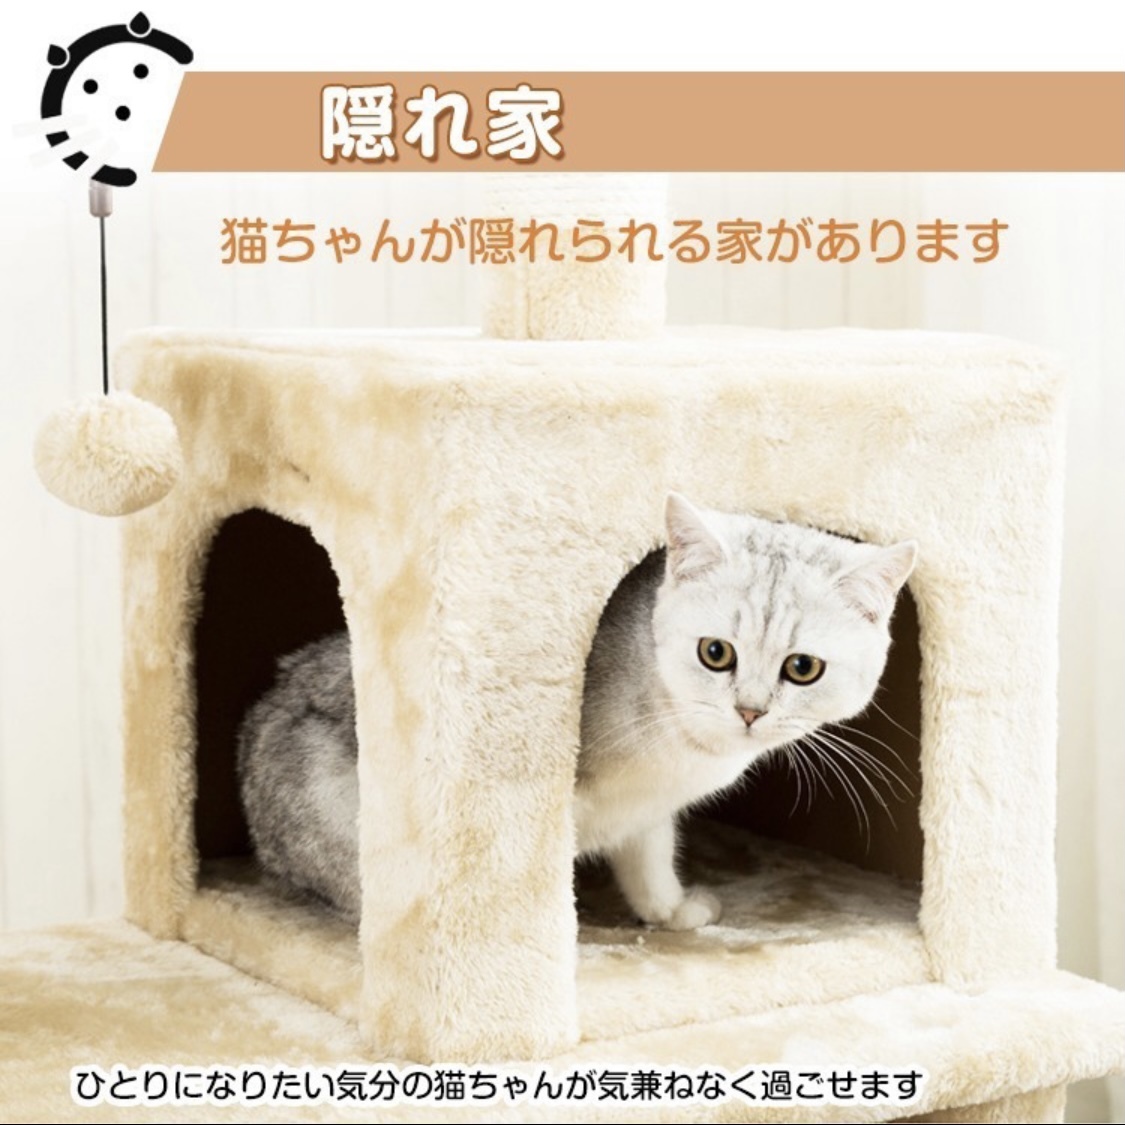  кошка Chan . сон средний стать башня для кошки серый 125CM/.. класть коготь .. гамак много голова .. кошка интерьер простой башня для кошки 